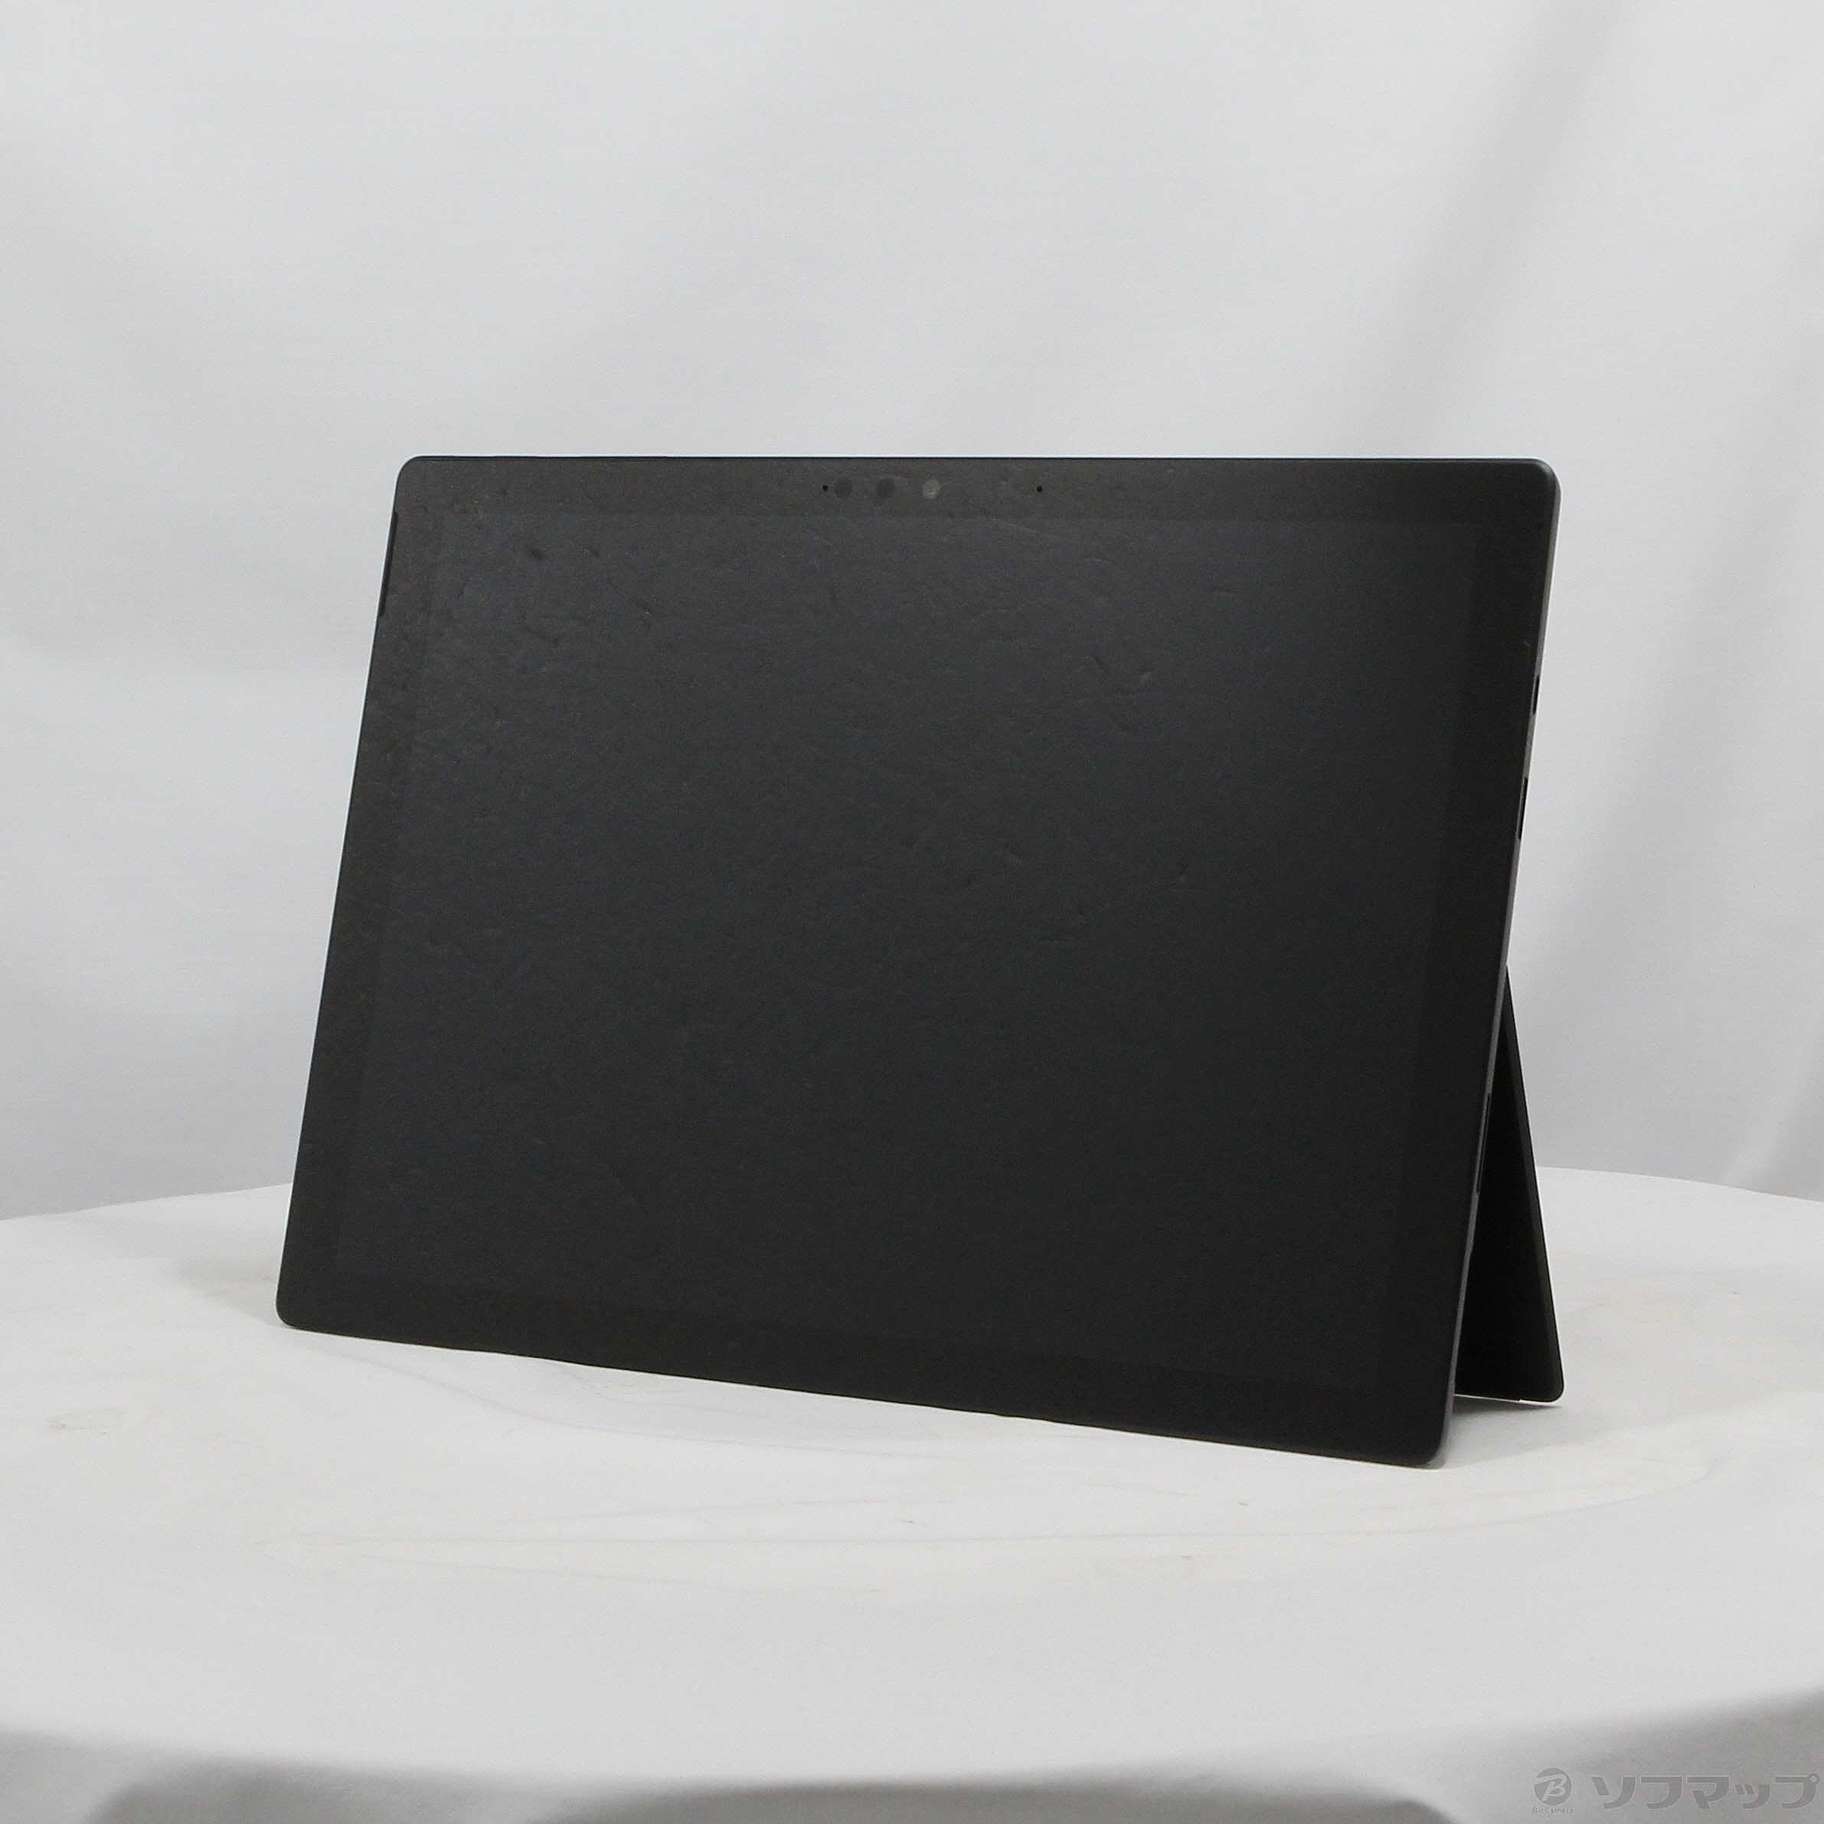 Surface Pro 7 VNX-00027 ブラック corei7